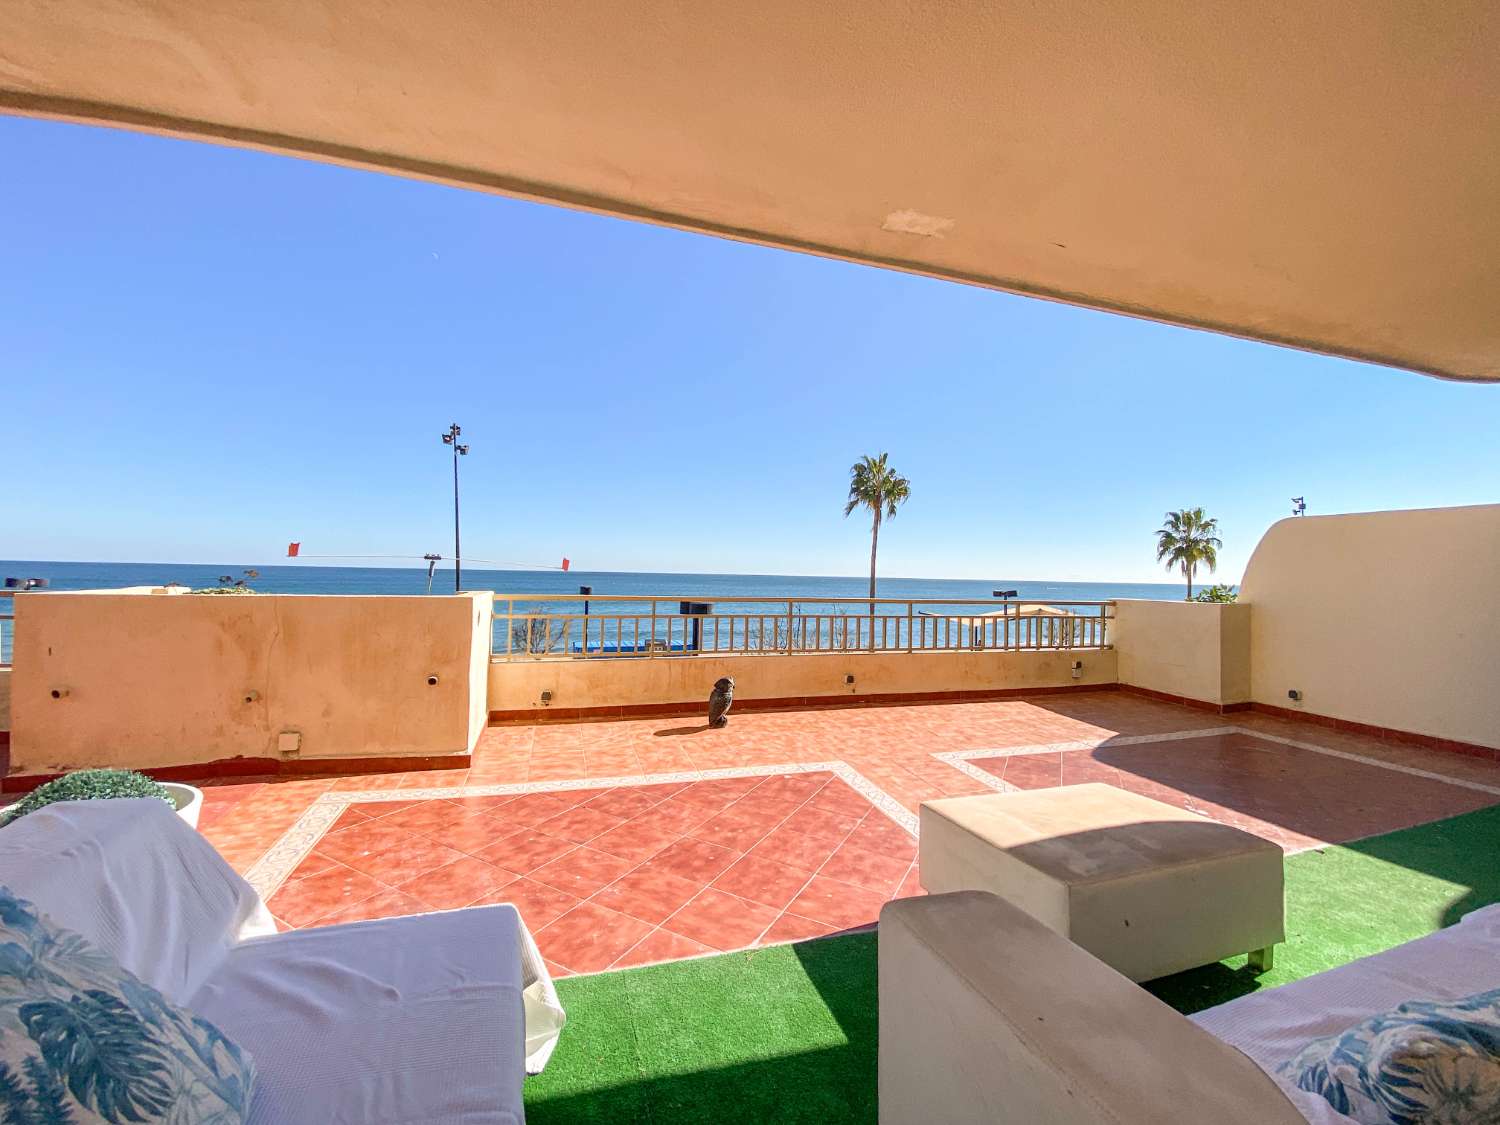 Unglaubliche Wohnung am Meer mit großer Terrasse von 300 qm.